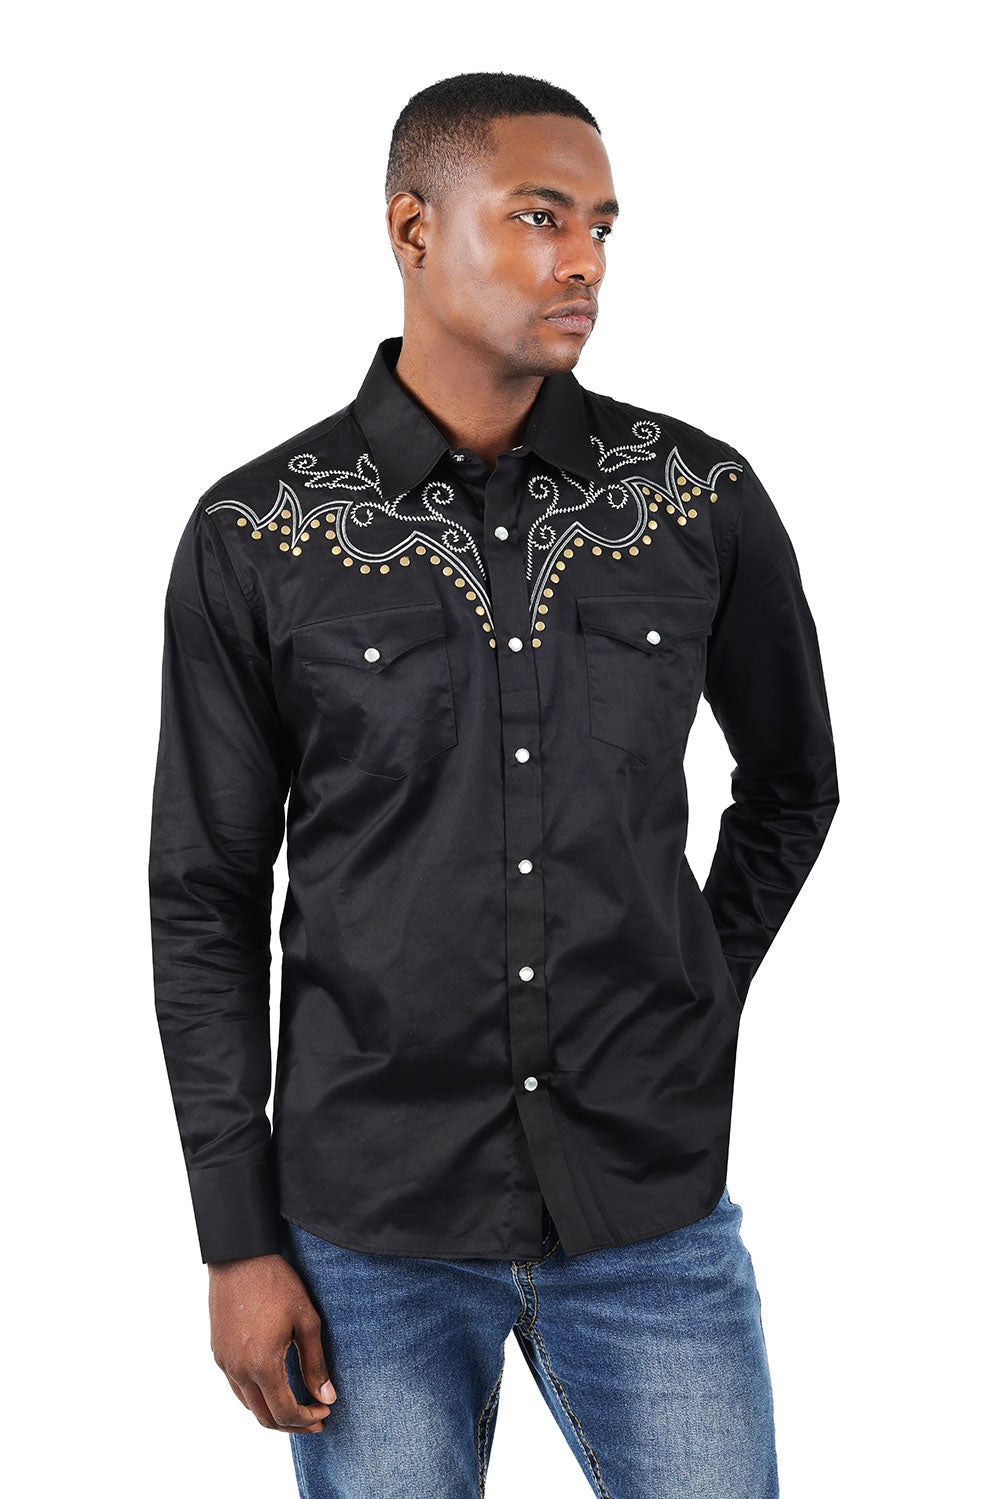 BARABAS Men's Horseshoe Studded Long Sleeve Western Shirts 3WS2 Black